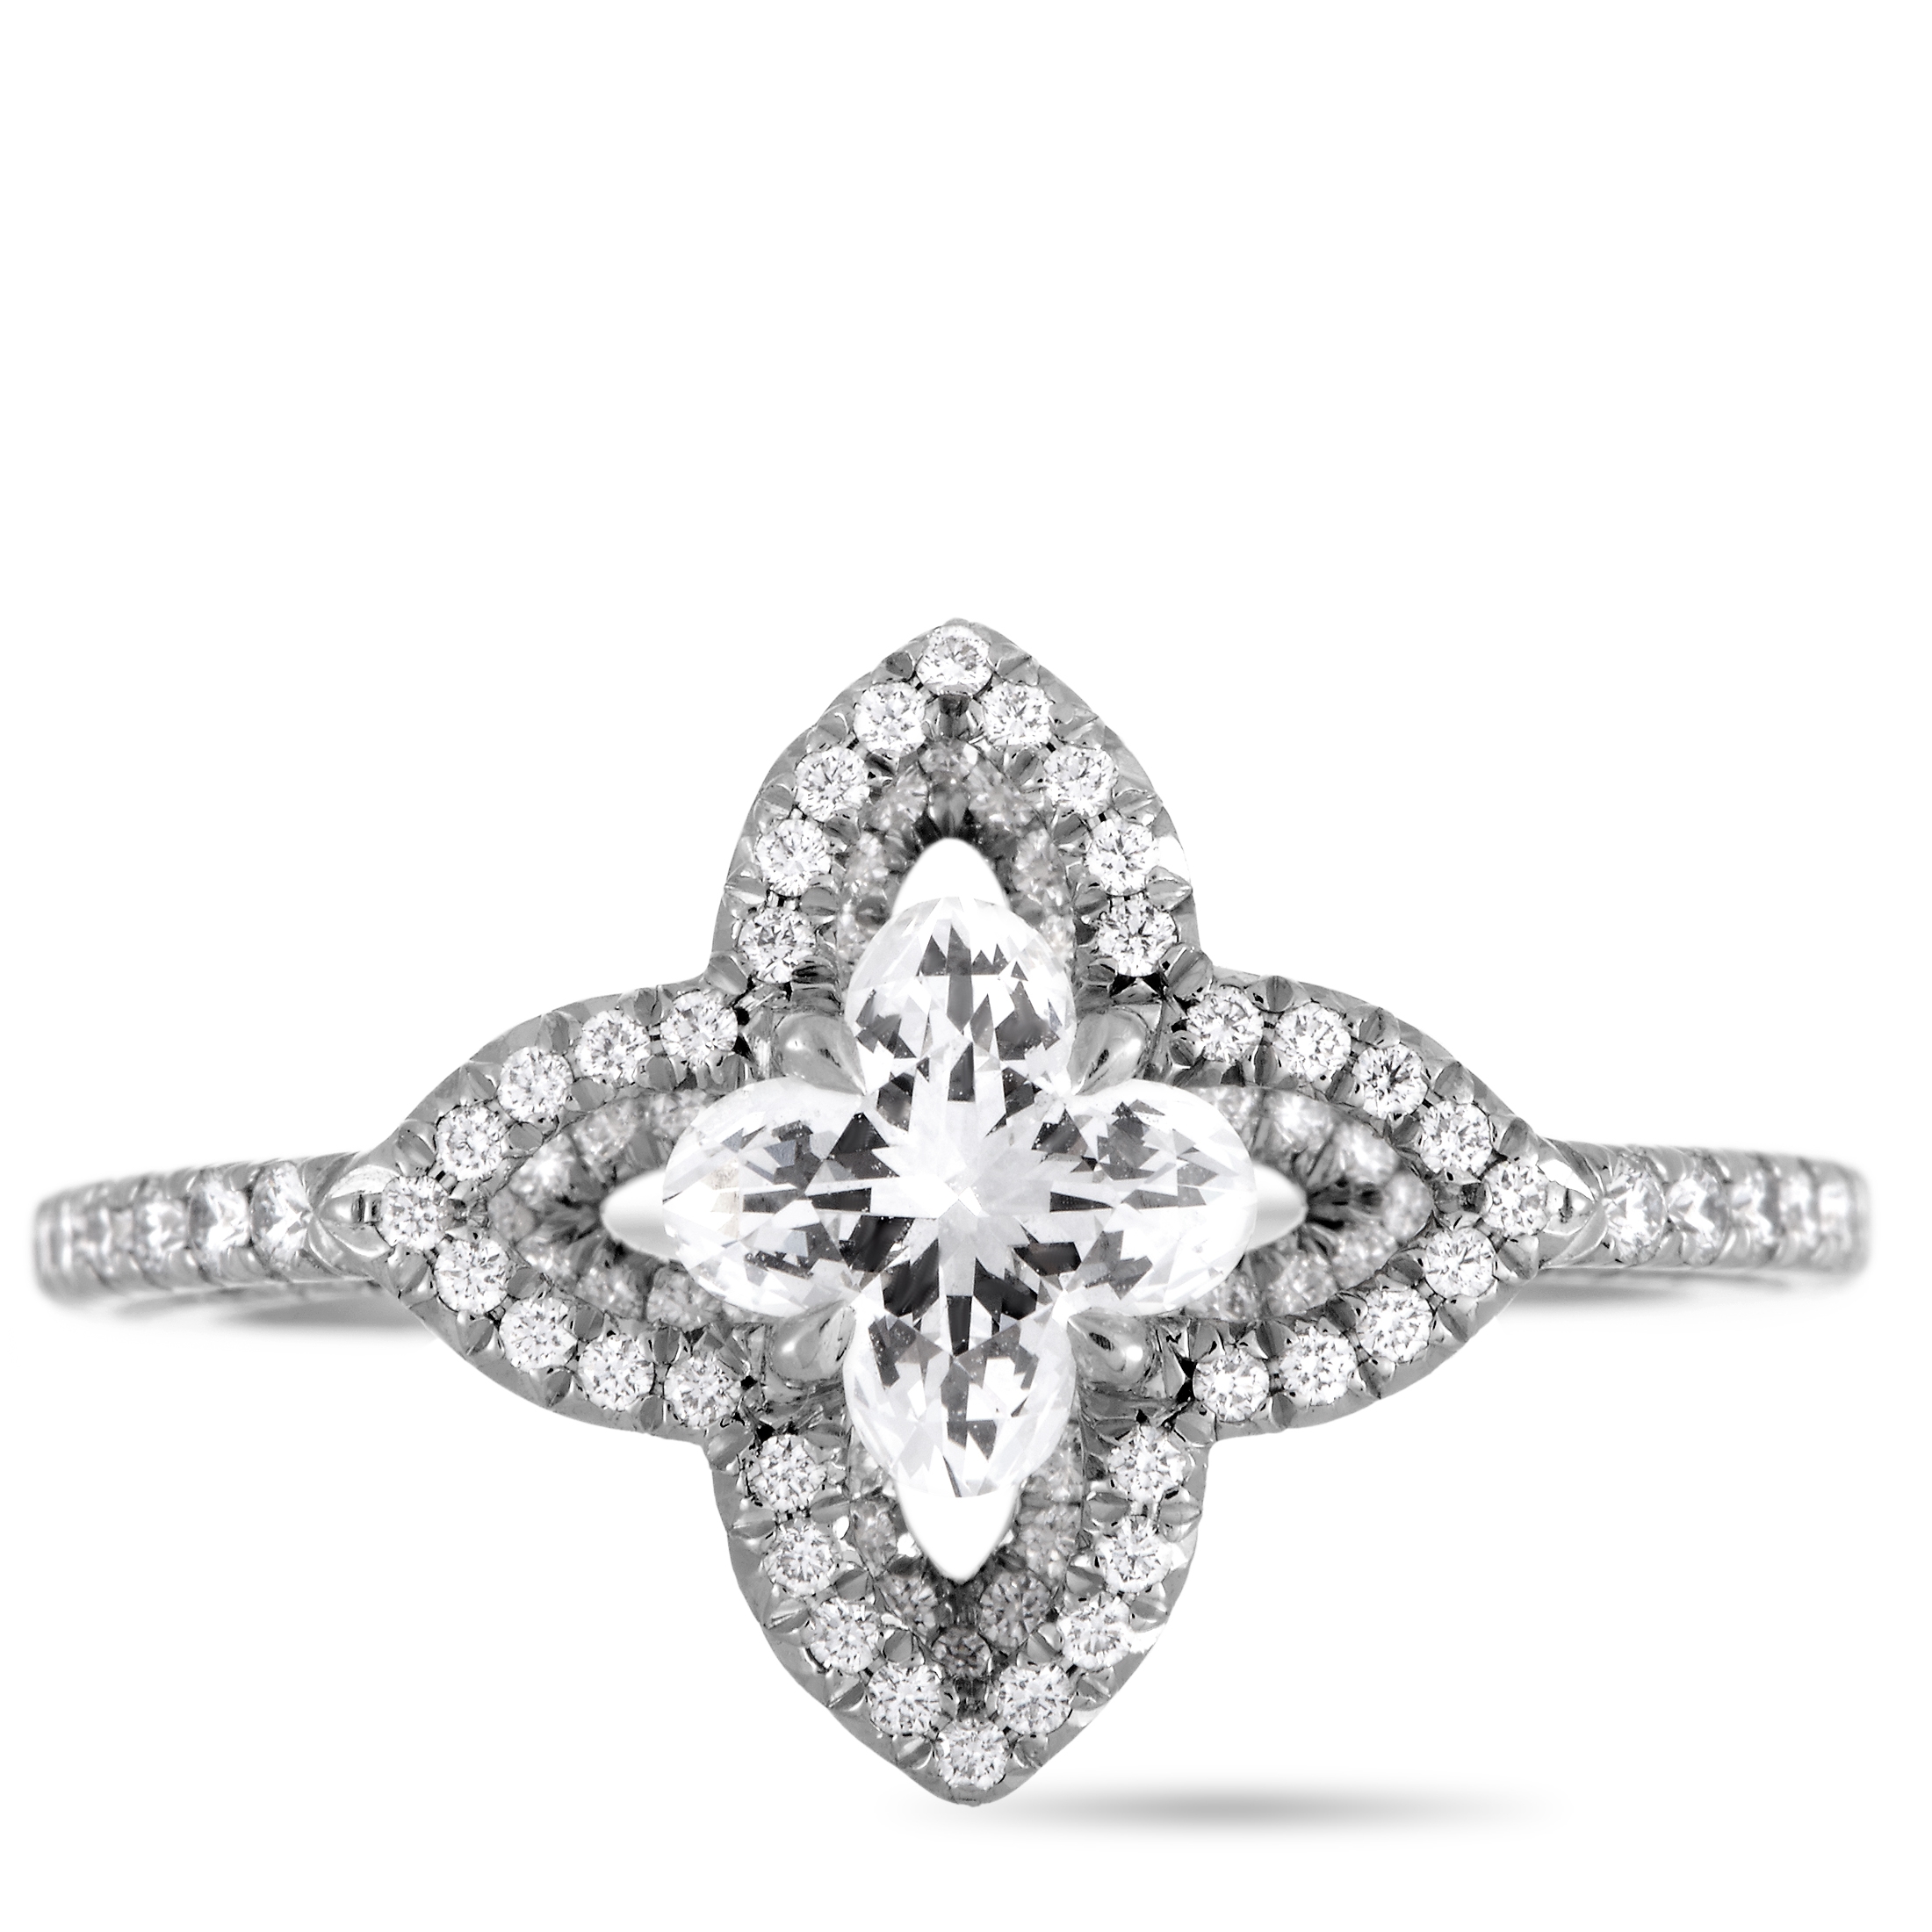 Monogram Fusion Platinum and Diamond Engagement Ring - 